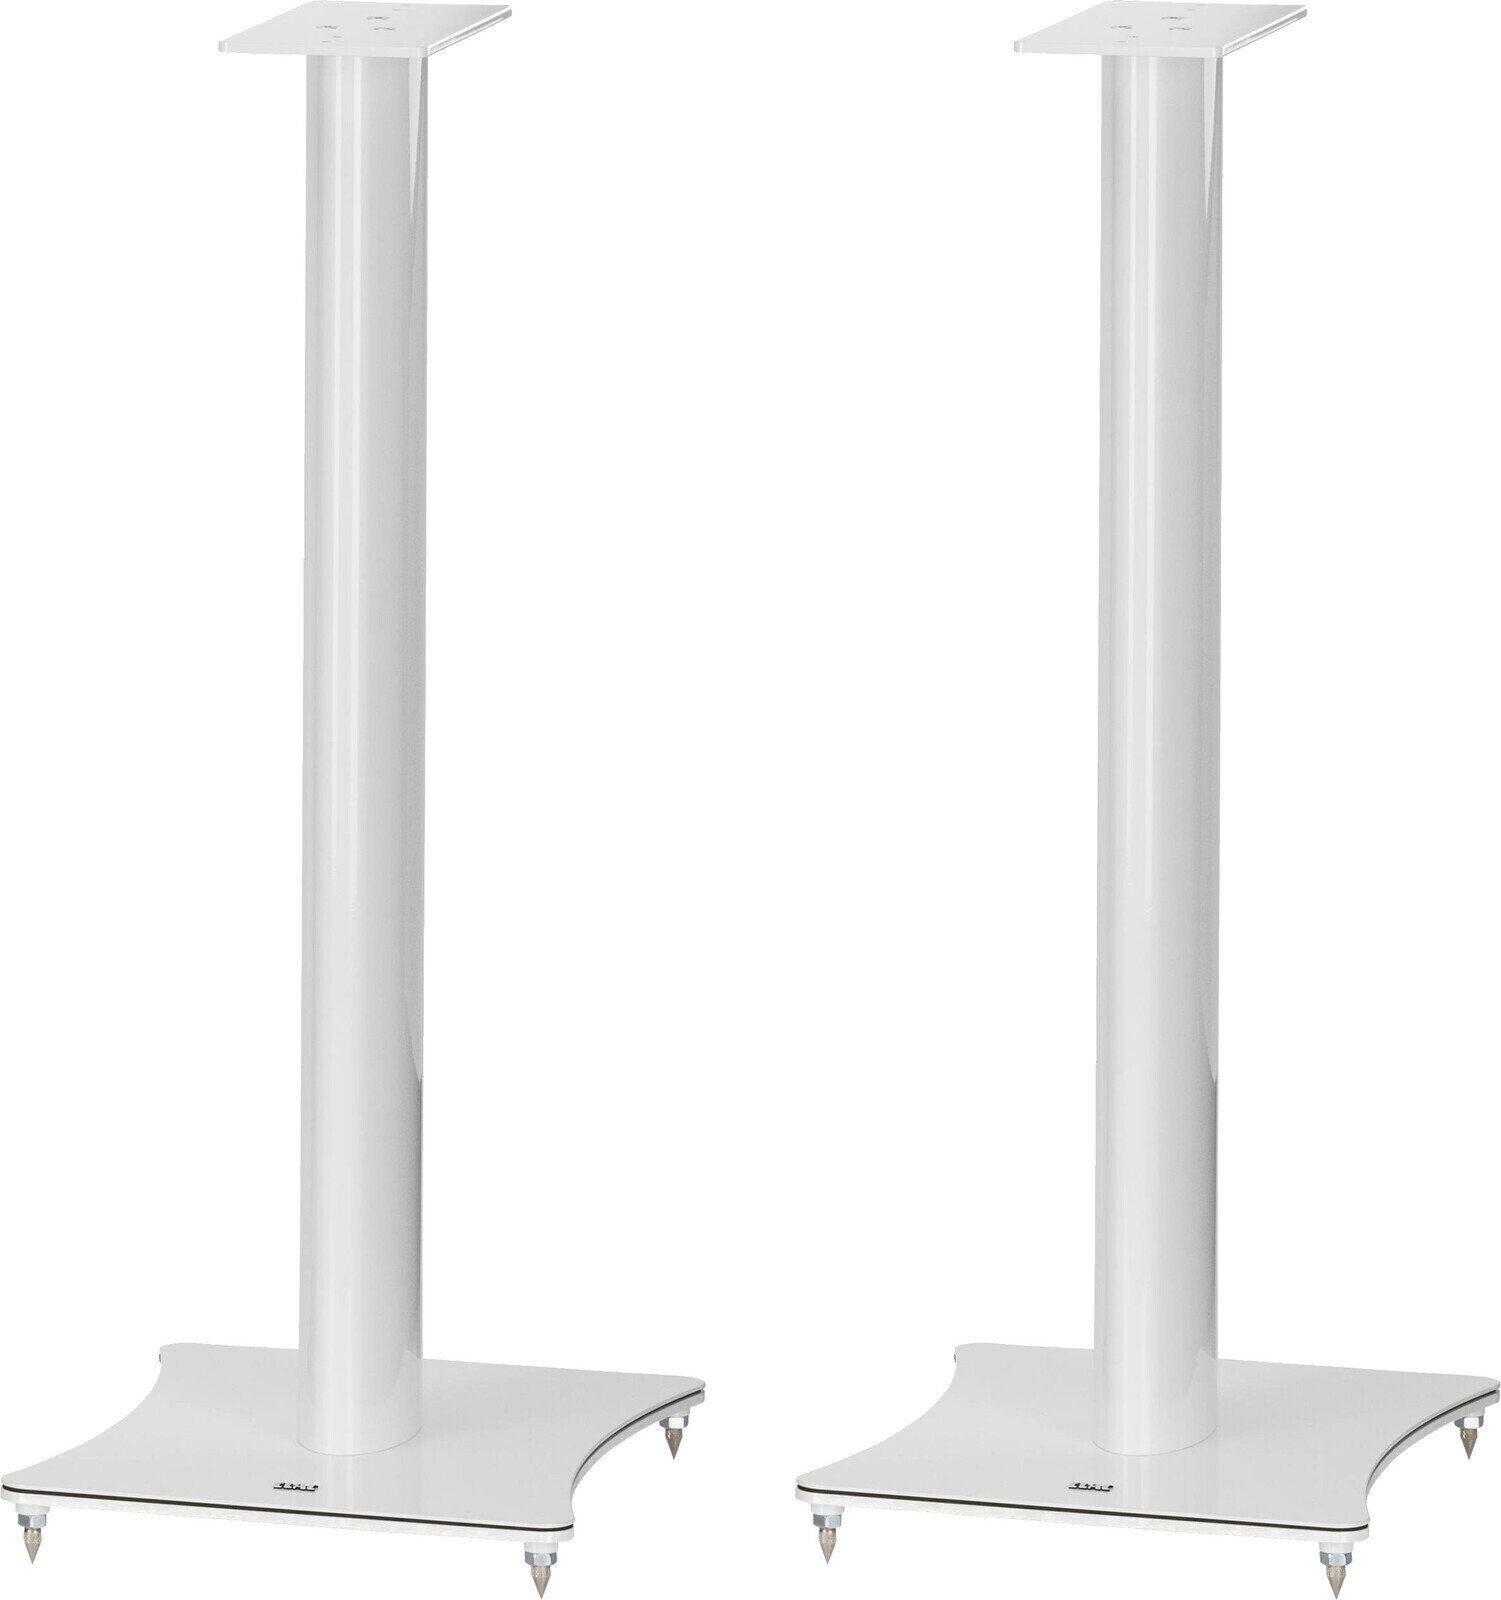 Hi-Fi Speaker stand Elac LS 30 High Gloss White Stand